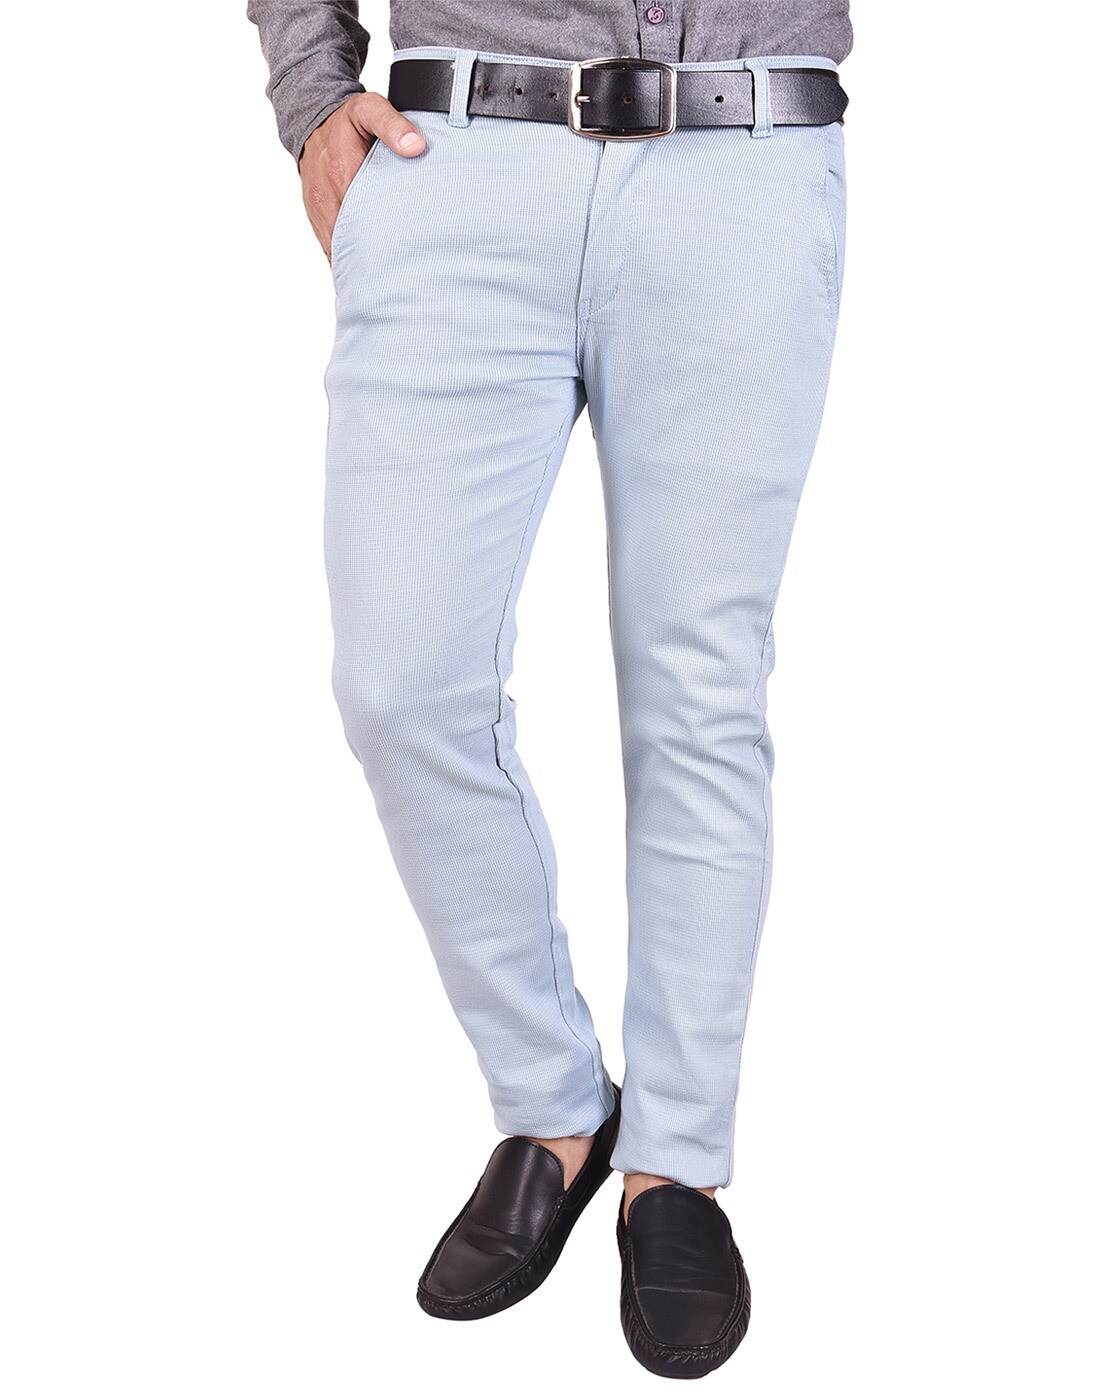 Men's pants chinos - blue P894 | Ombre.com - Men's clothing online